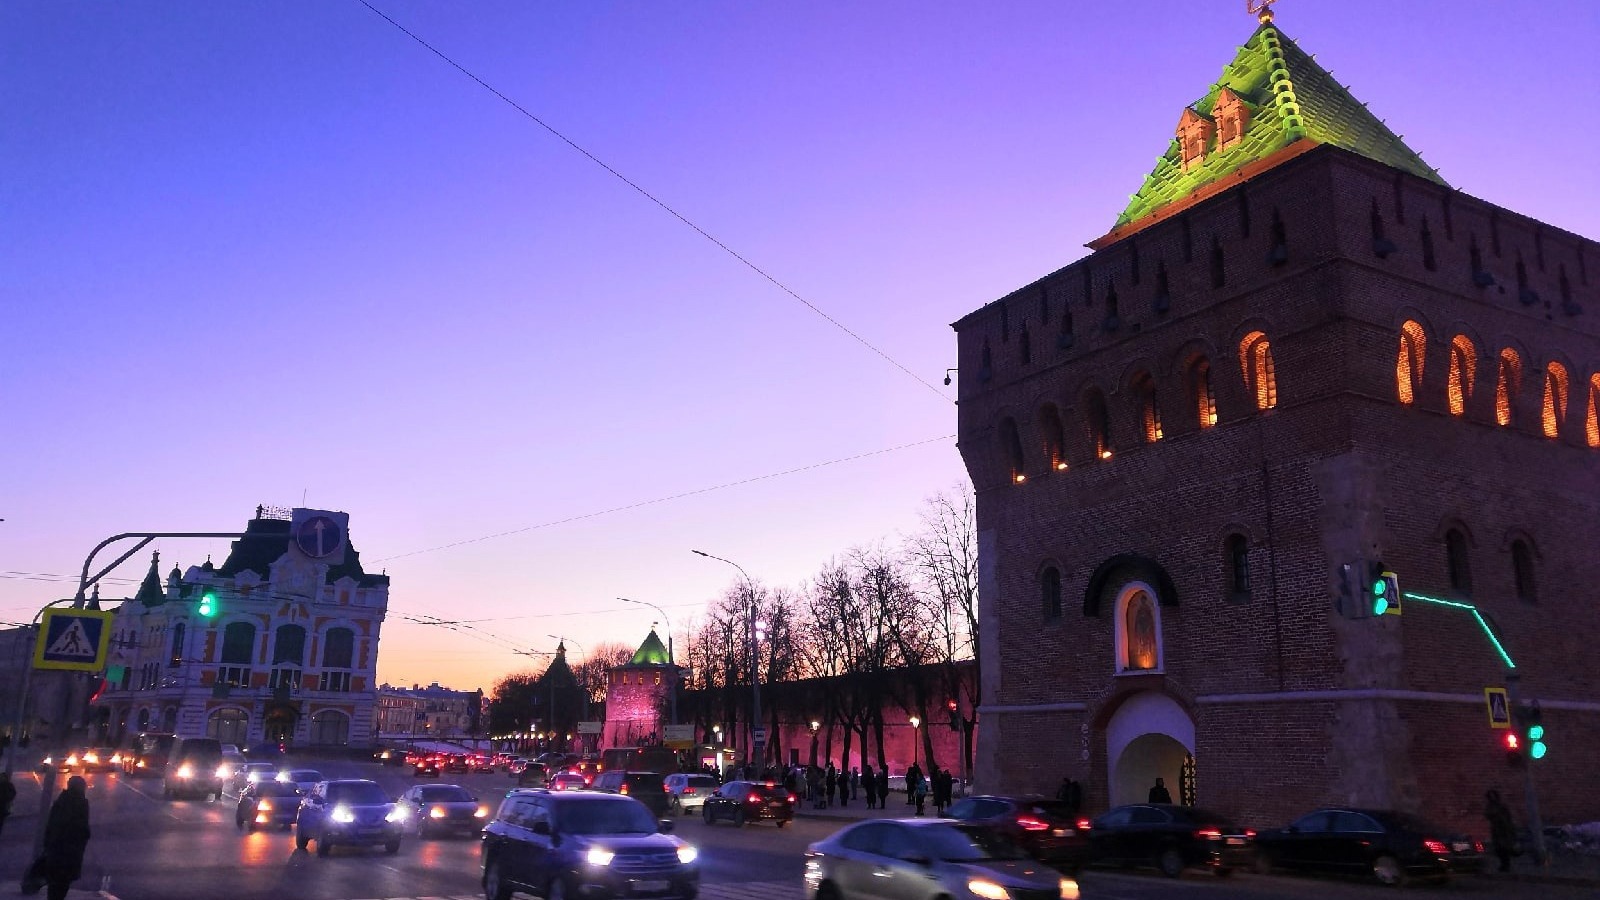 Нижний Новгород занял 13 место в рейтинге мегаполисов по развитию ЖКХ